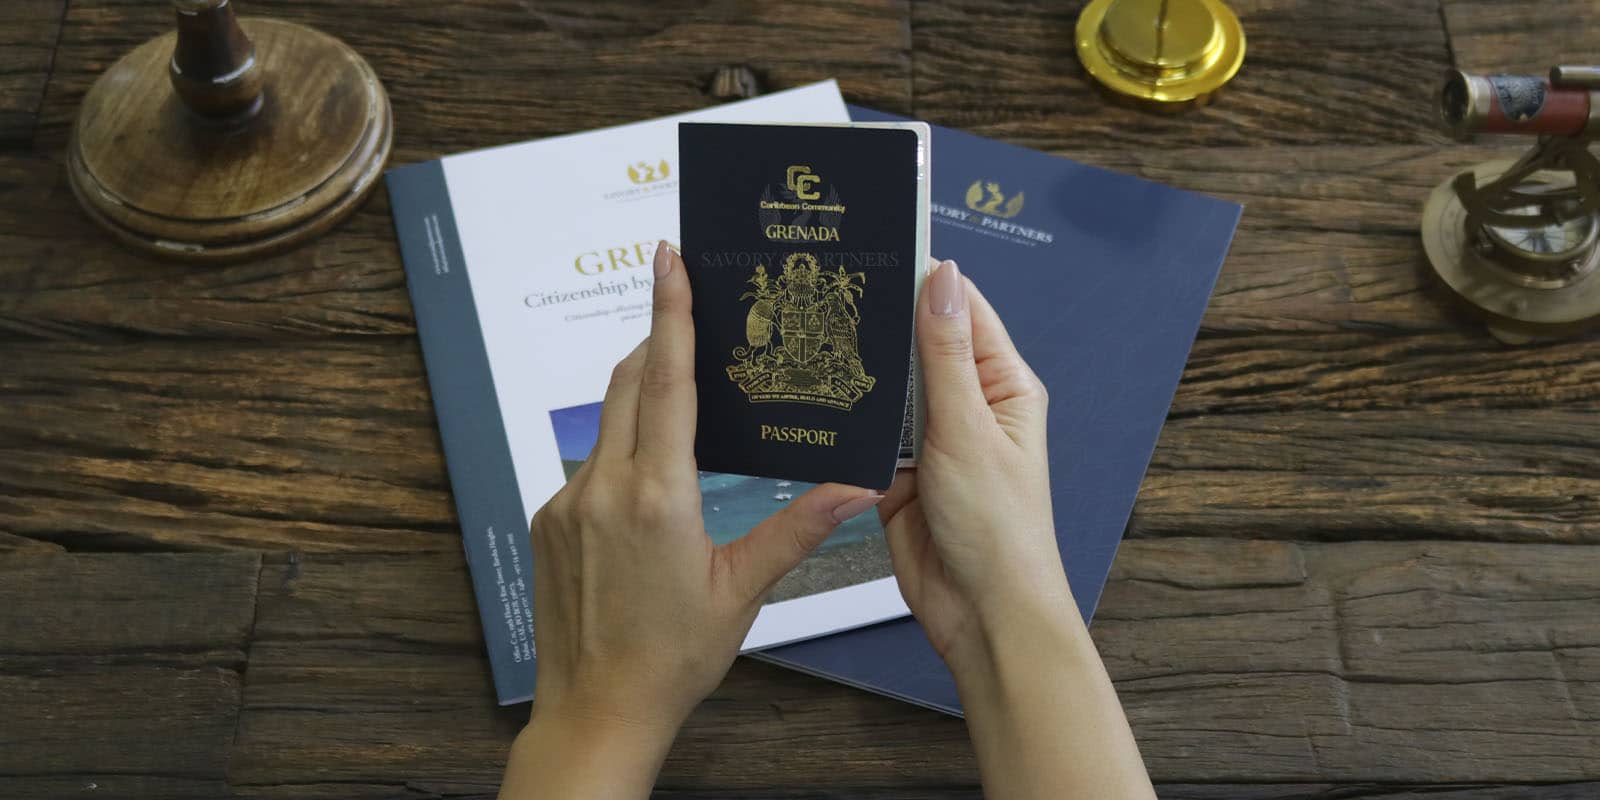 Grenada passport